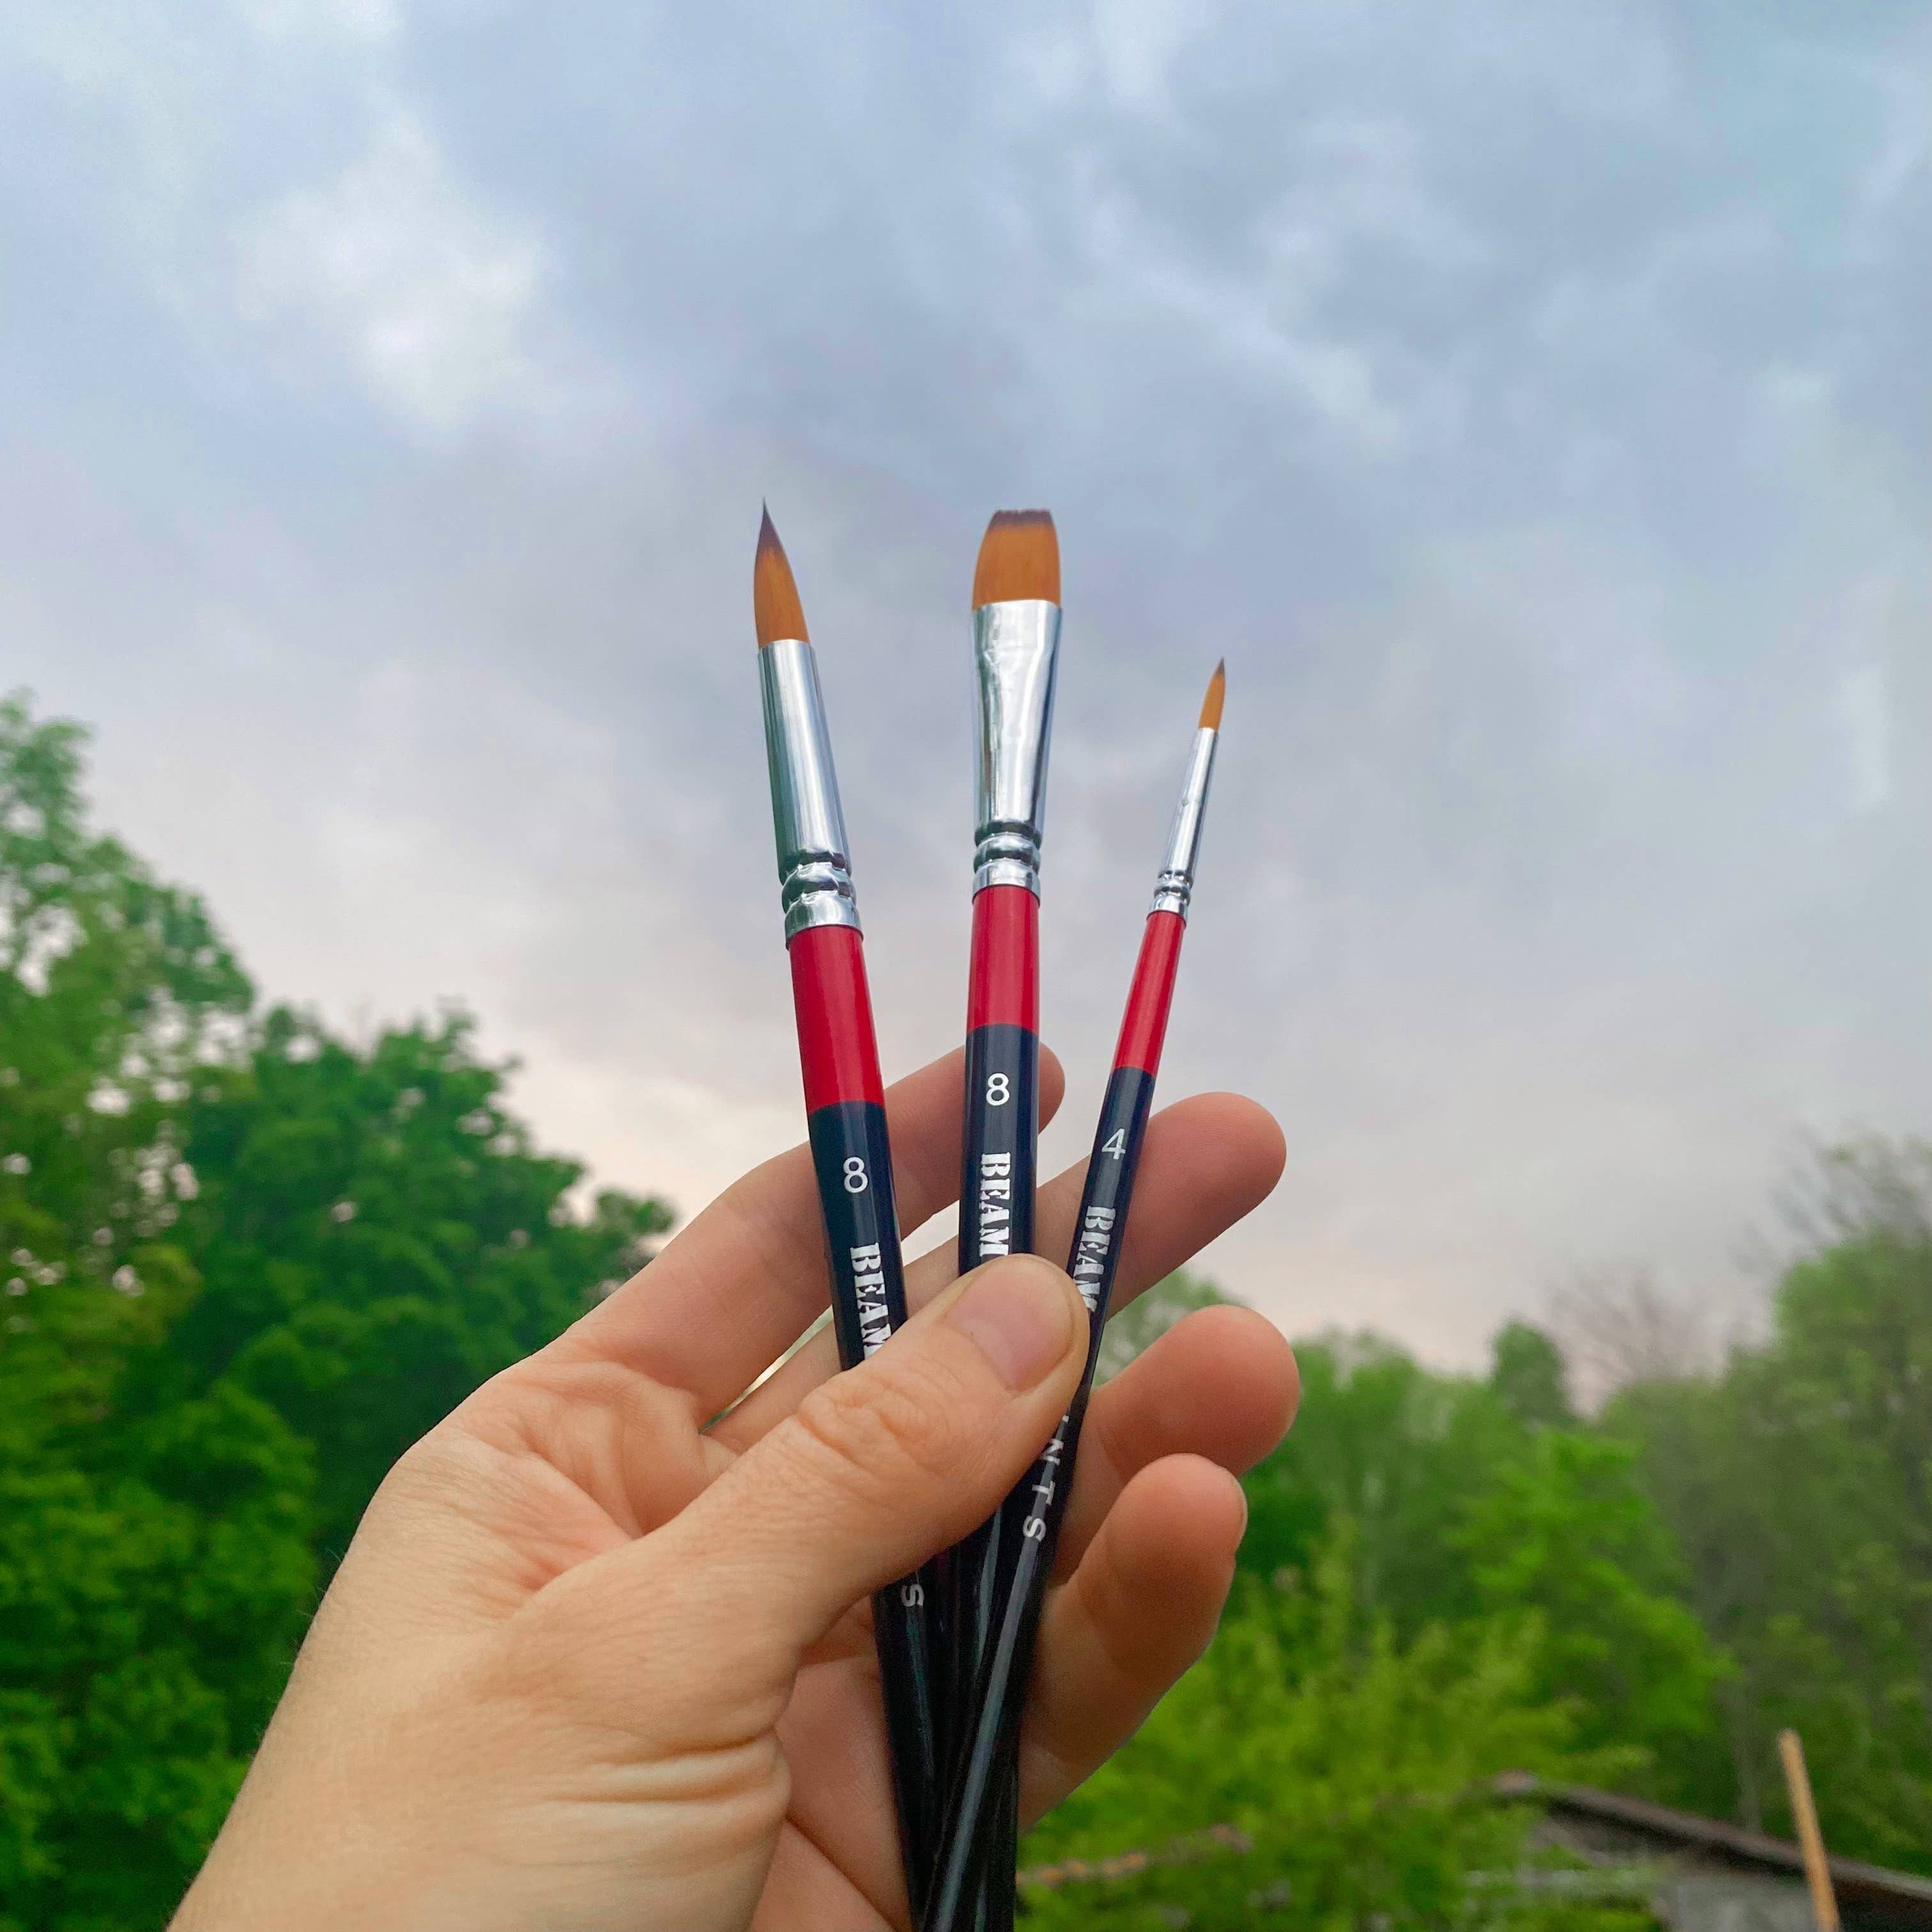 Beam Basics Travel Paint Brush: #4 Round